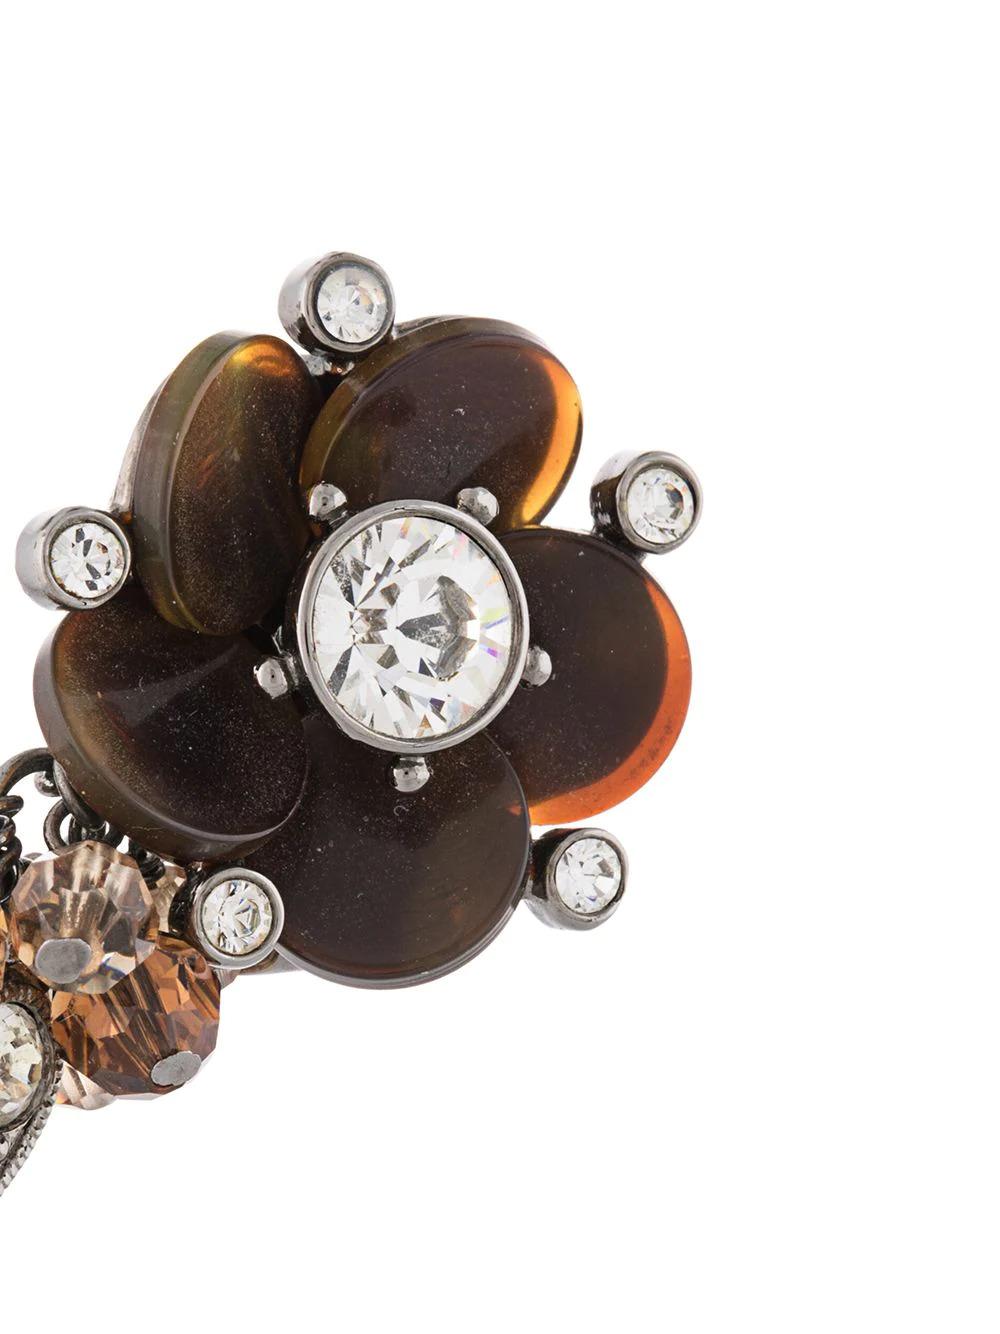 Verleihen Sie Ihrem Look einen Hauch von Eleganz mit diesem Paar Ohrringe von Christian Dior, das mit seiner markanten Blumenform in Brauntönen für optimale Eleganz sorgt.

Farbe: Braun

Zusammensetzung: Metall, Kunststoff

Abmessungen: Gewicht